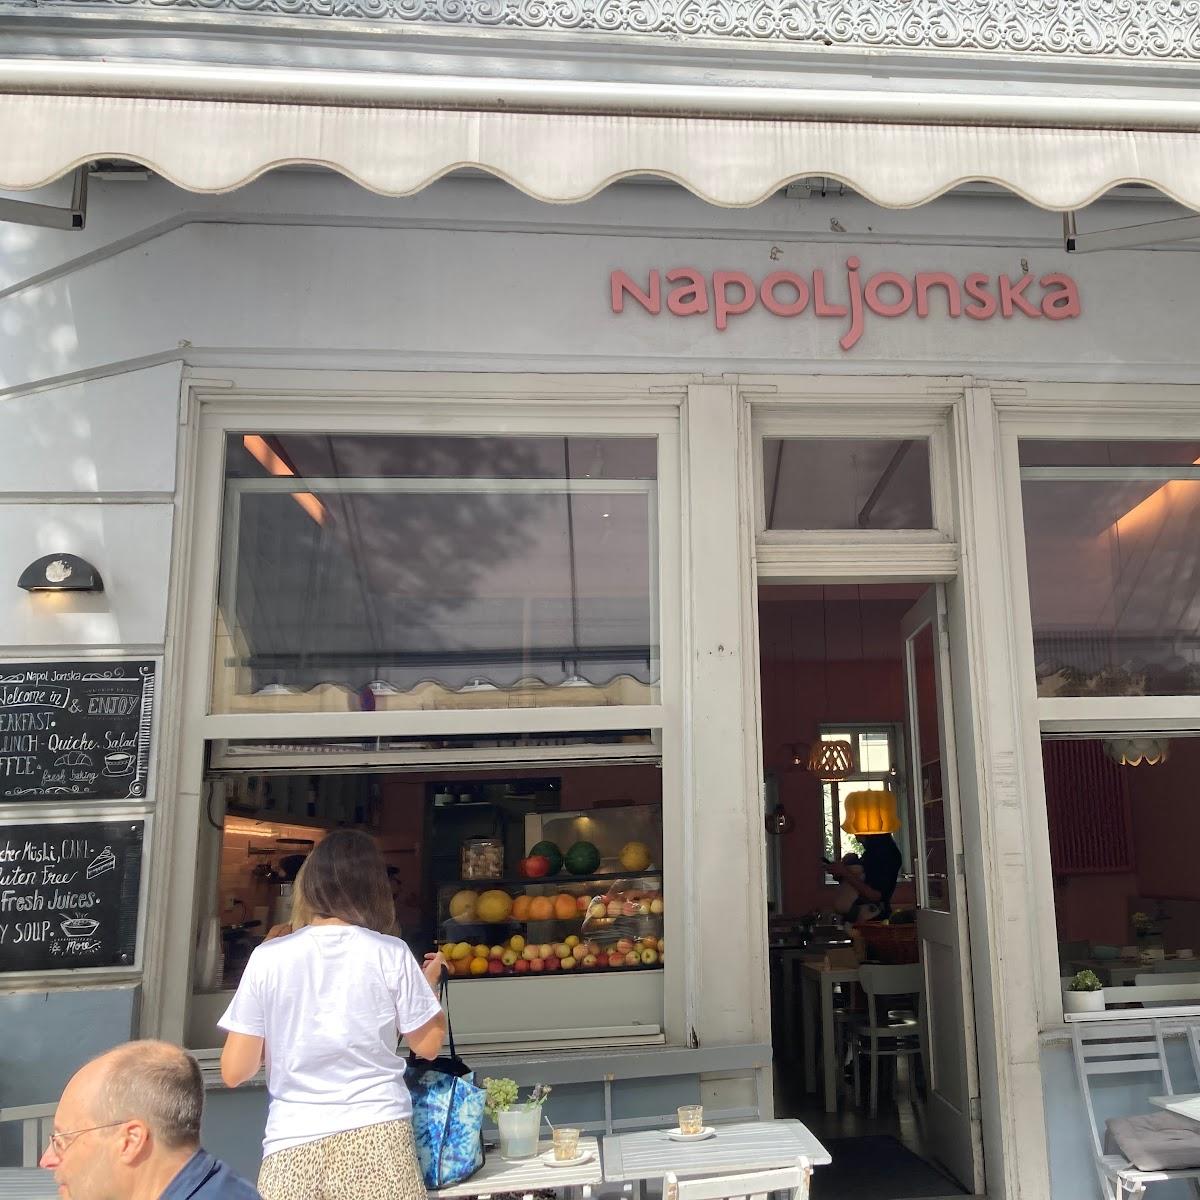 Restaurant "Napoljonska" in Berlin